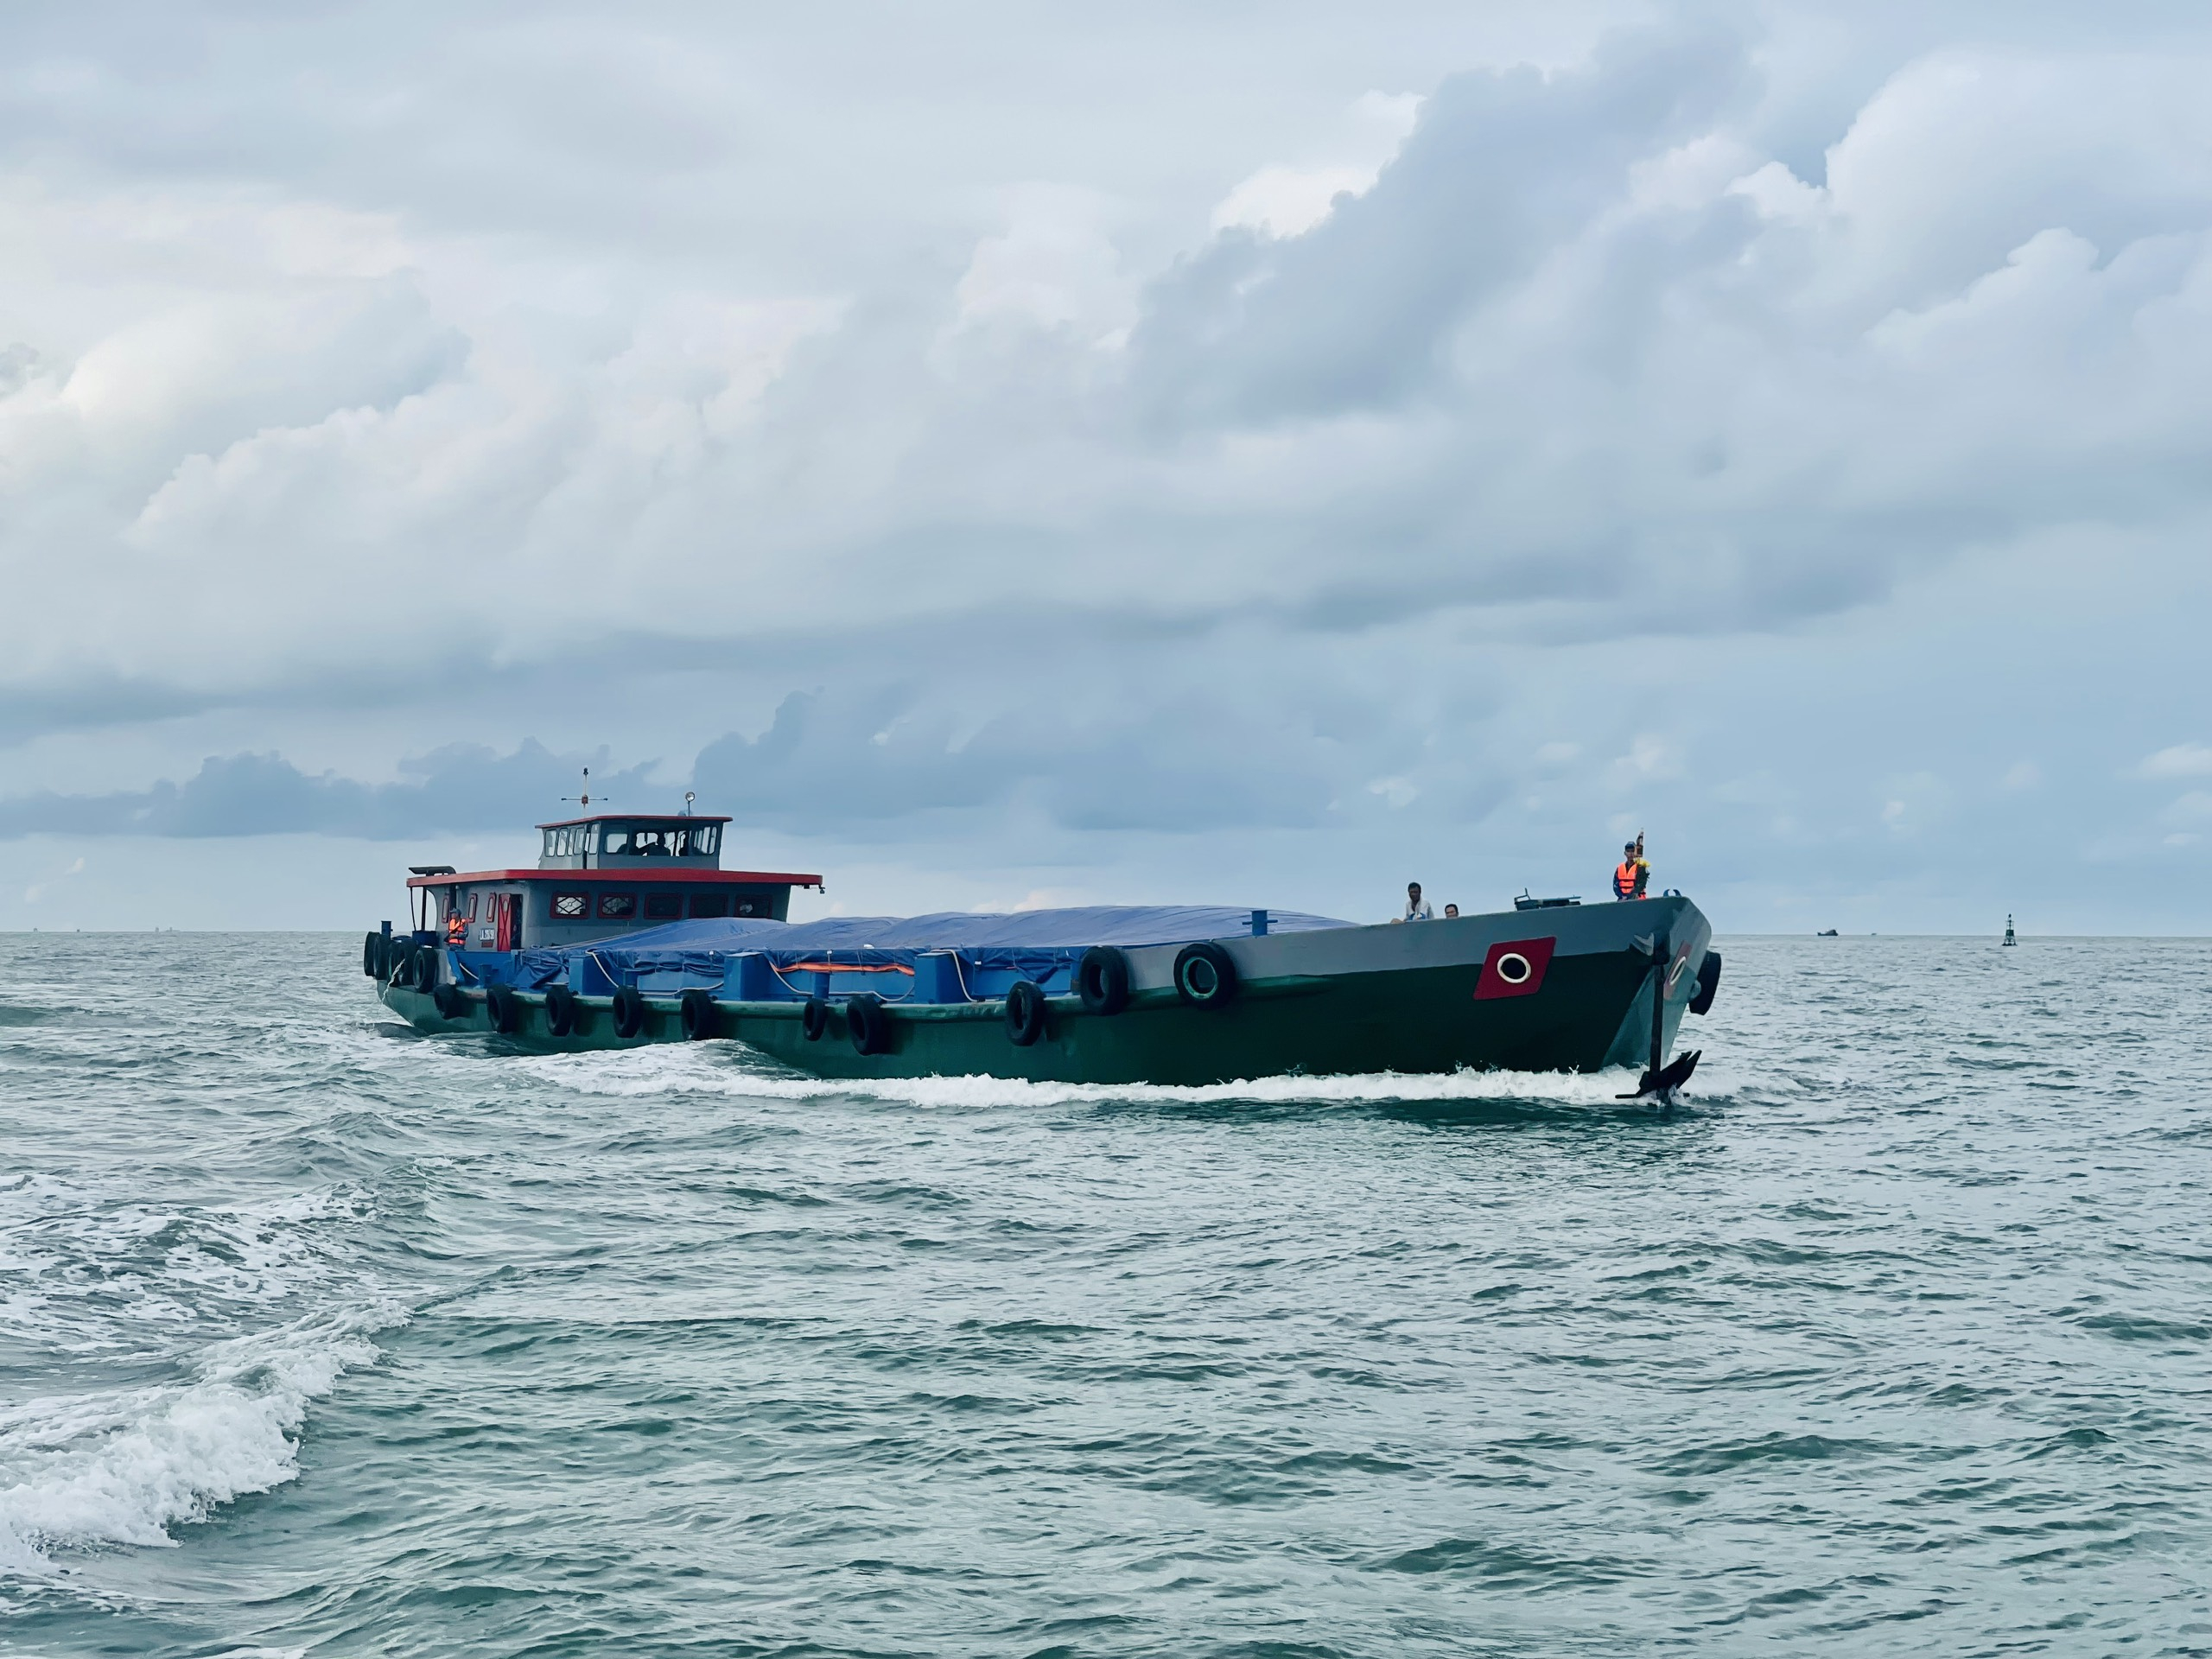 Lực lượng chức năng đưa tàu LA-05058 về Cảng Hải đội 301, thành phố Vũng Tàu để điều tra xử lý theo quy định.